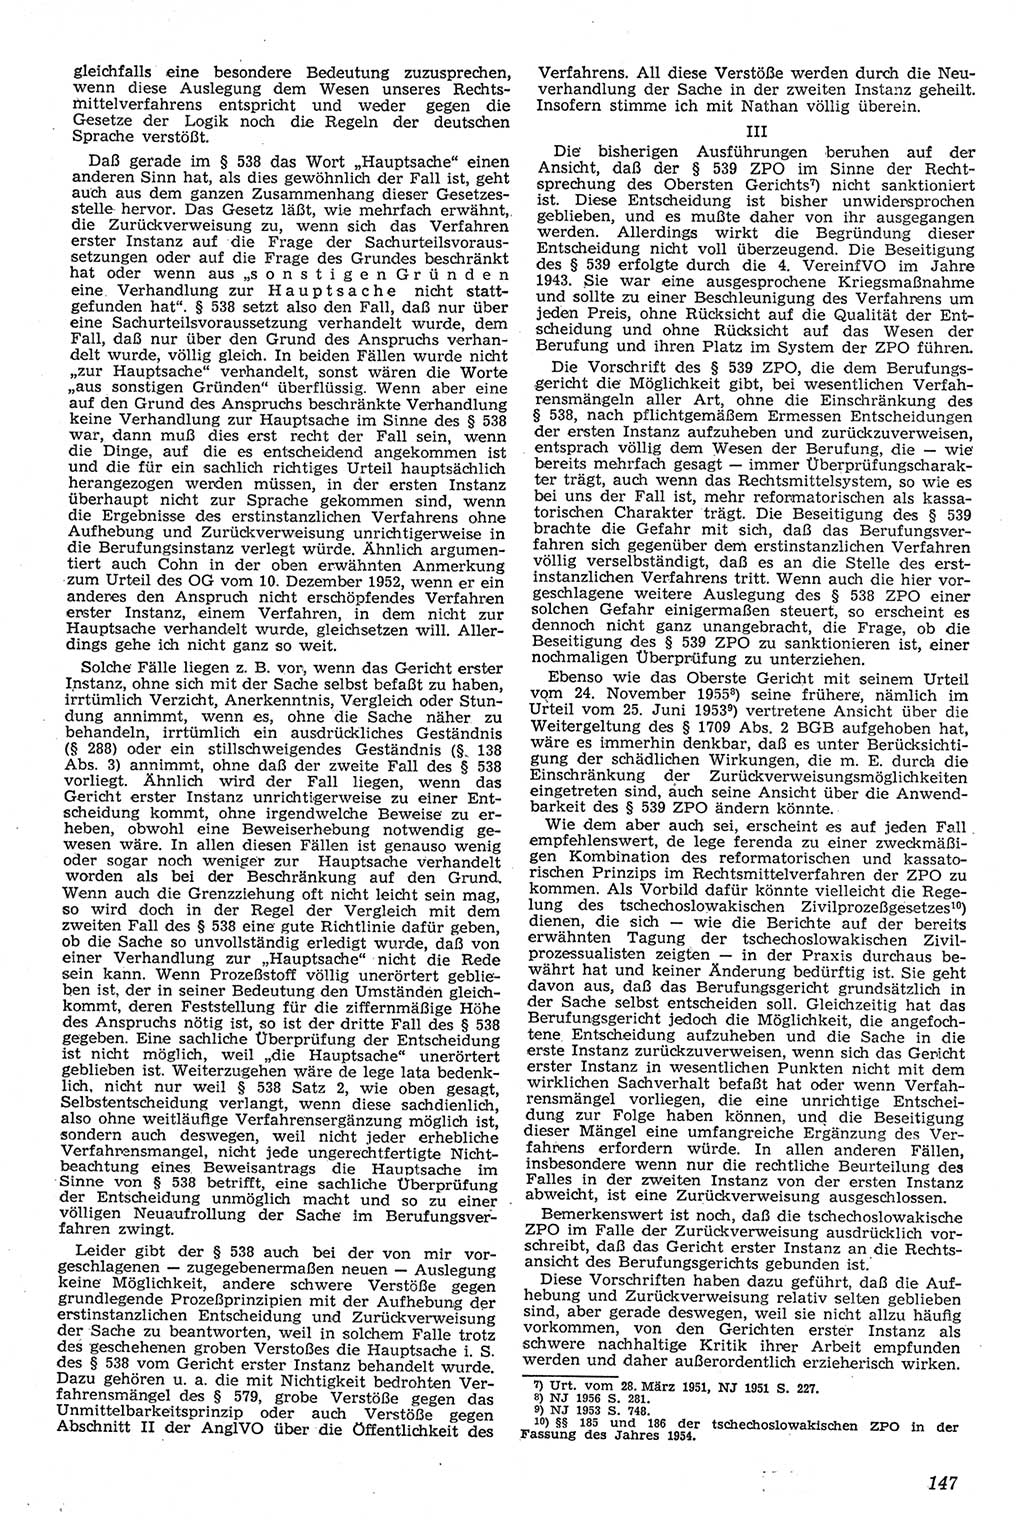 Neue Justiz (NJ), Zeitschrift für Recht und Rechtswissenschaft [Deutsche Demokratische Republik (DDR)], 11. Jahrgang 1957, Seite 147 (NJ DDR 1957, S. 147)